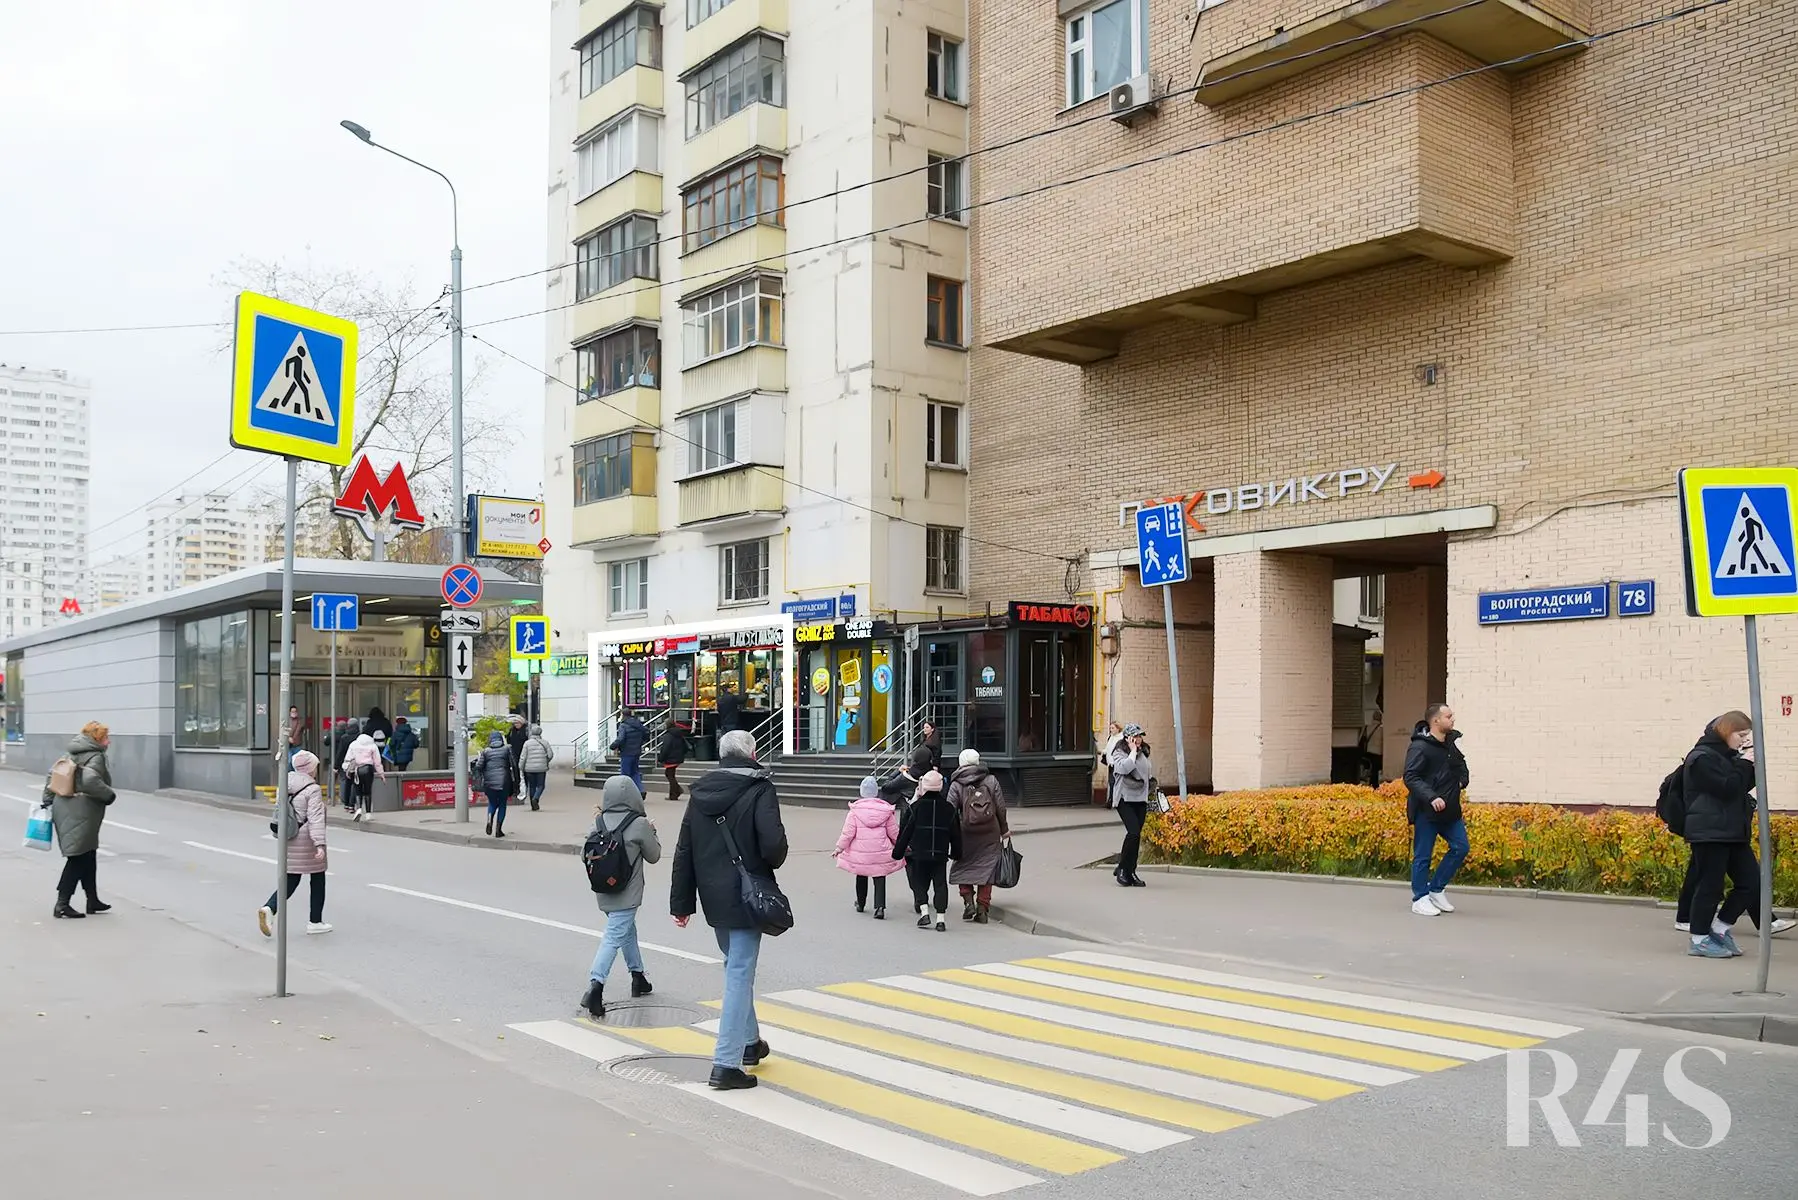 Продажа готового арендного бизнеса площадью 55.4 м2 в Москве: Волгоградский проспект, 80/2к1 R4S | Realty4Sale